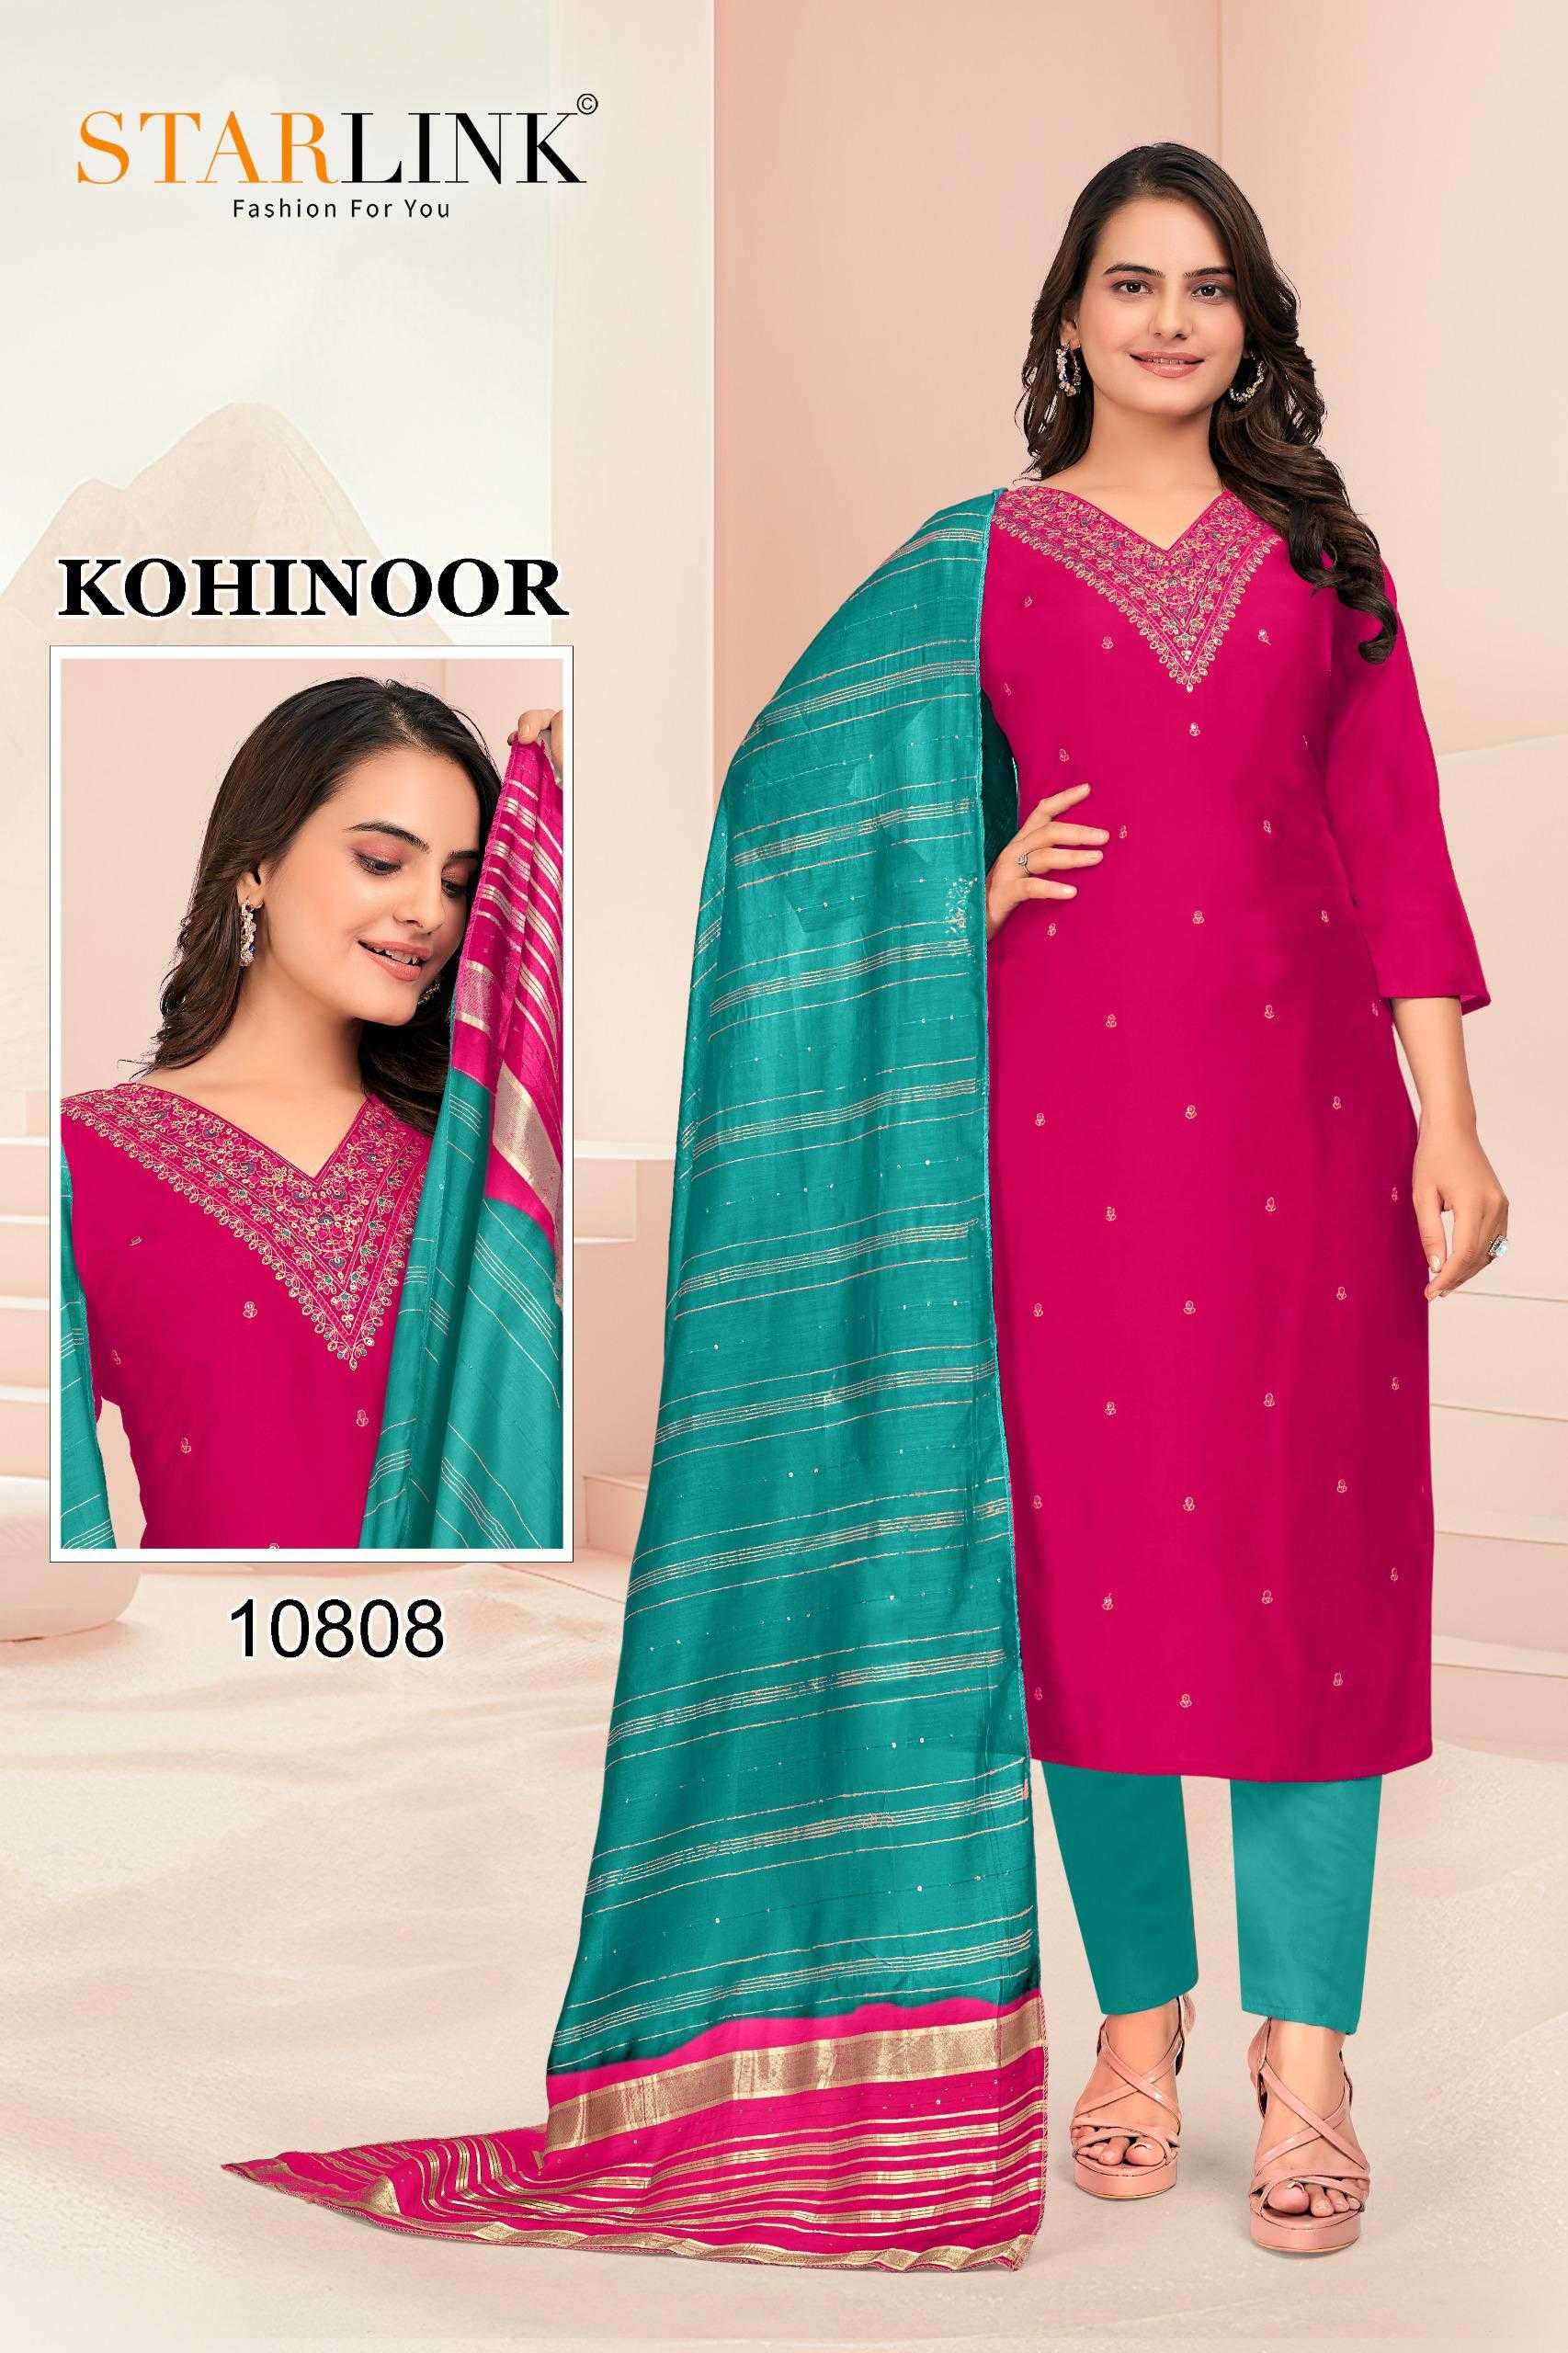 starlink kohinoor series 10801-10810 chanderi readymade suit 